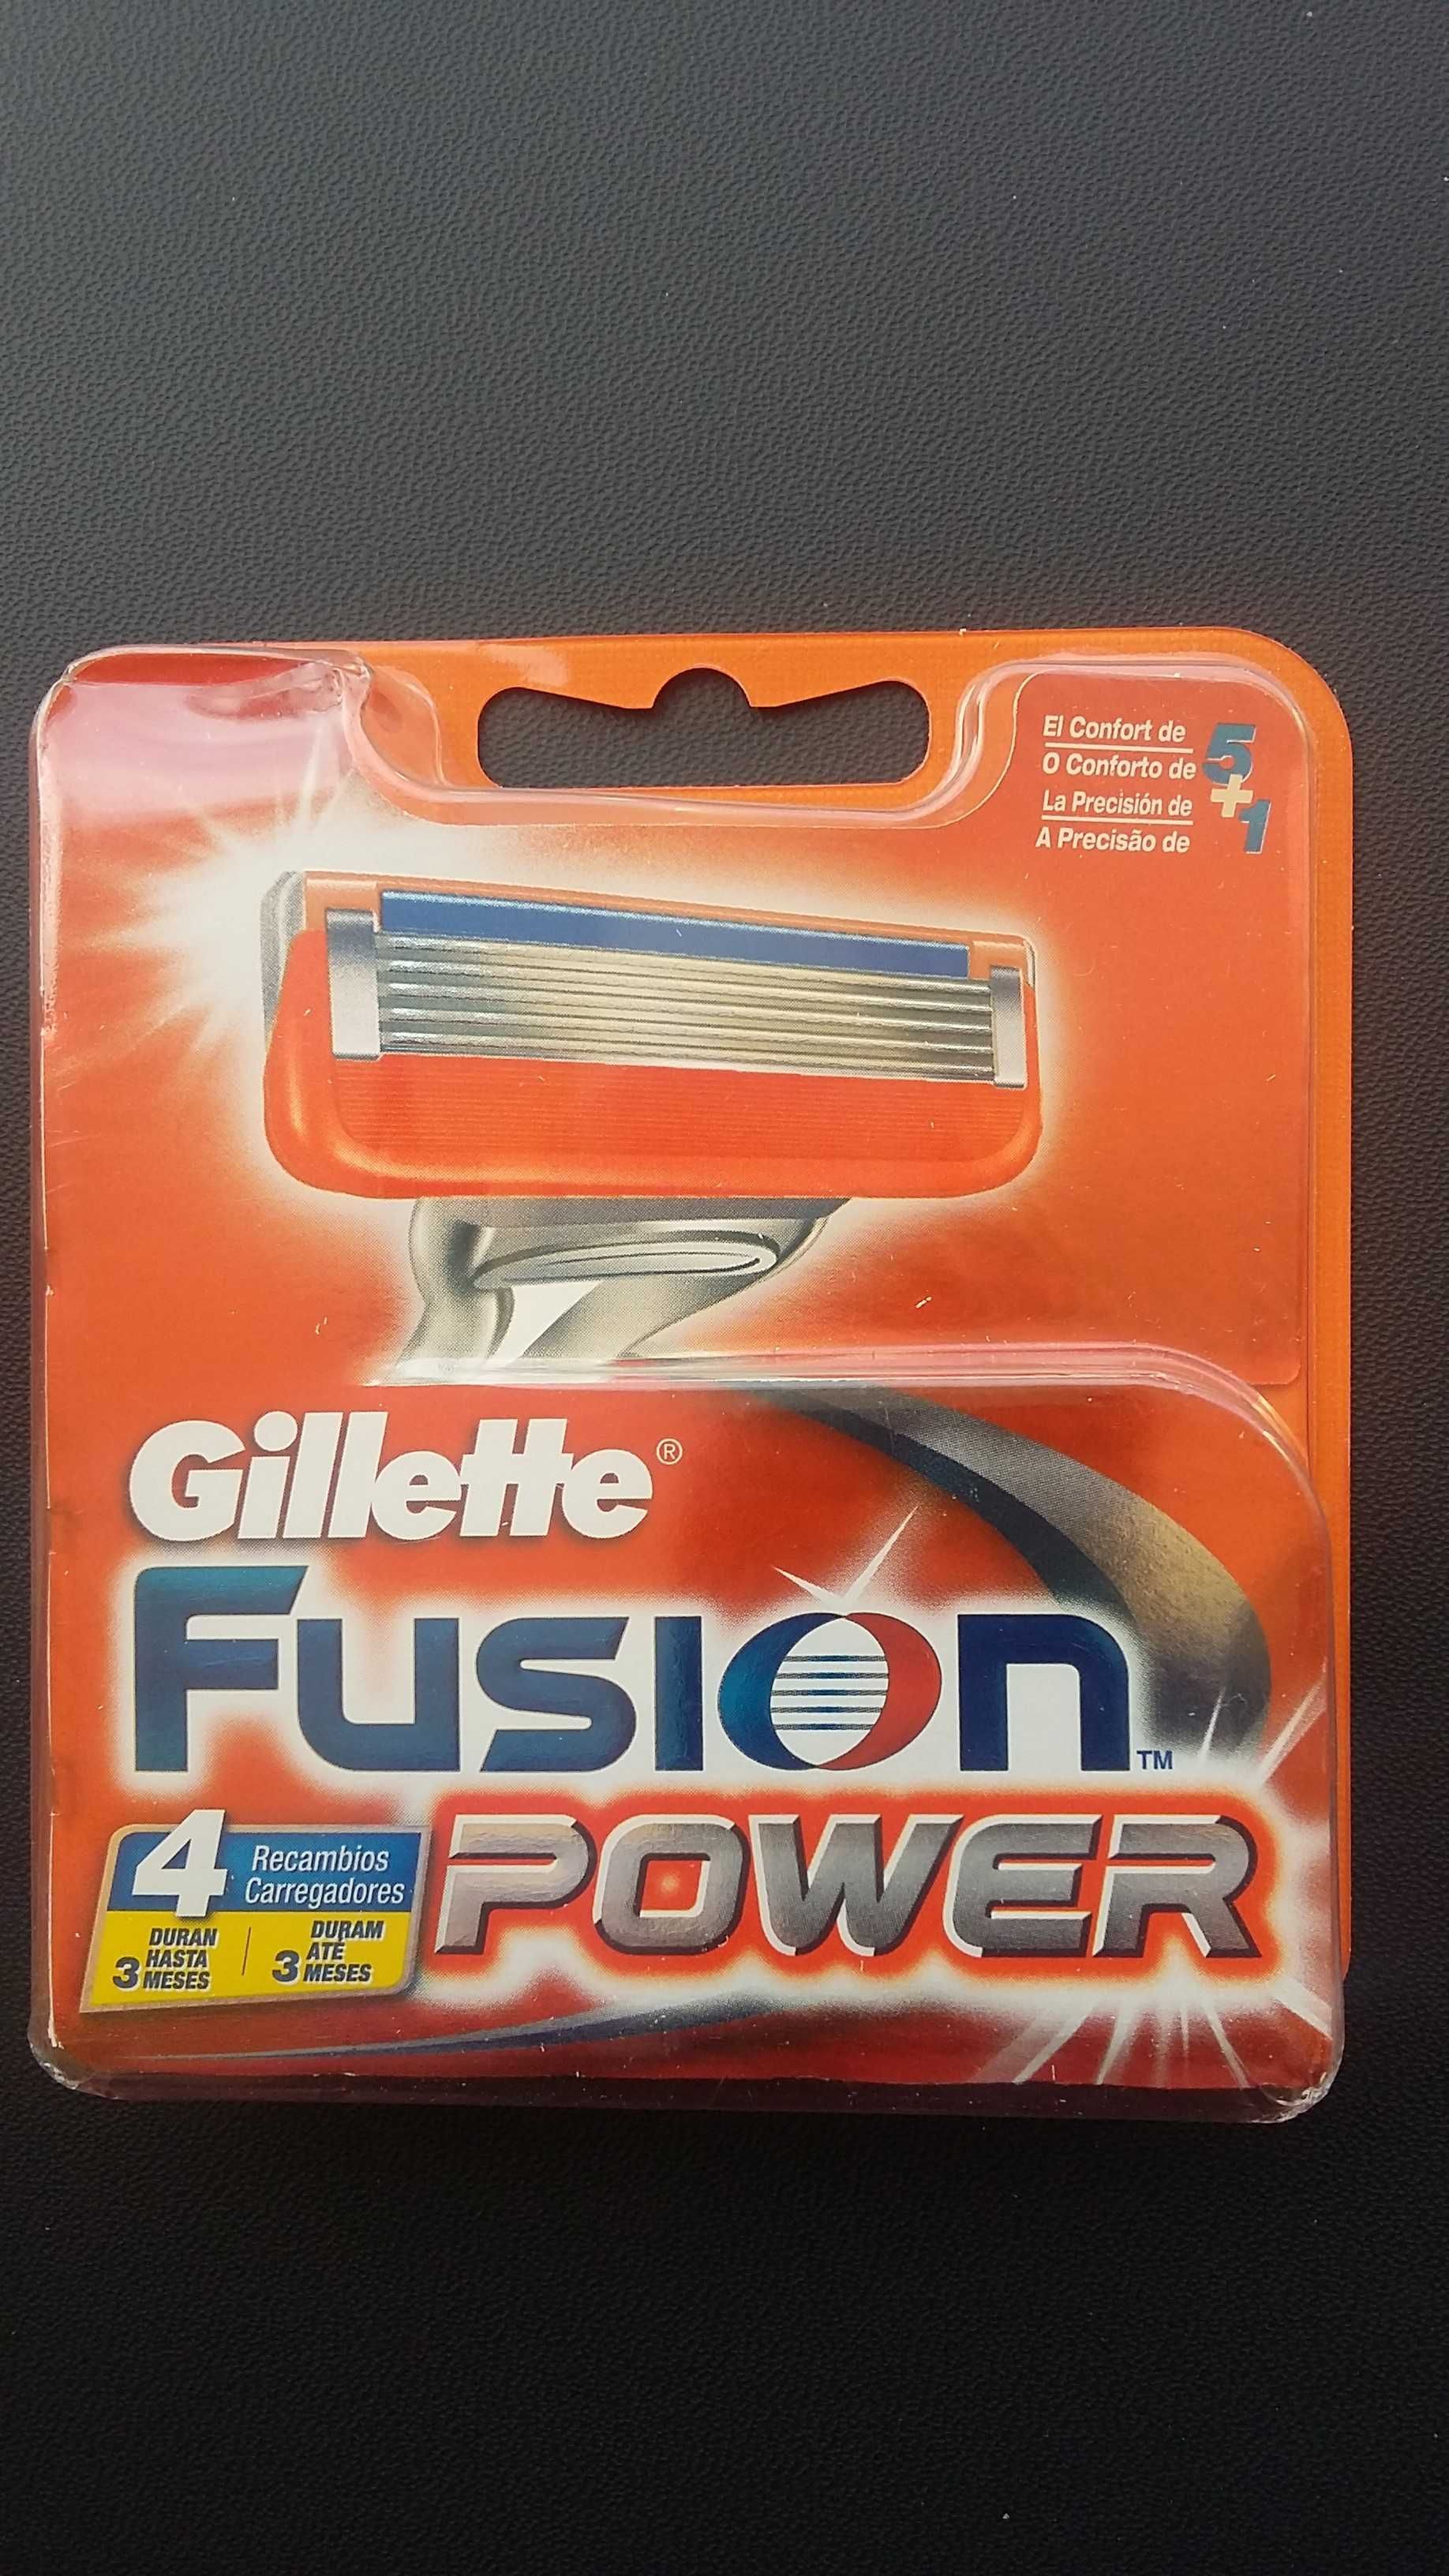 Carregador Fusion  Power 4 recargas
Gillette